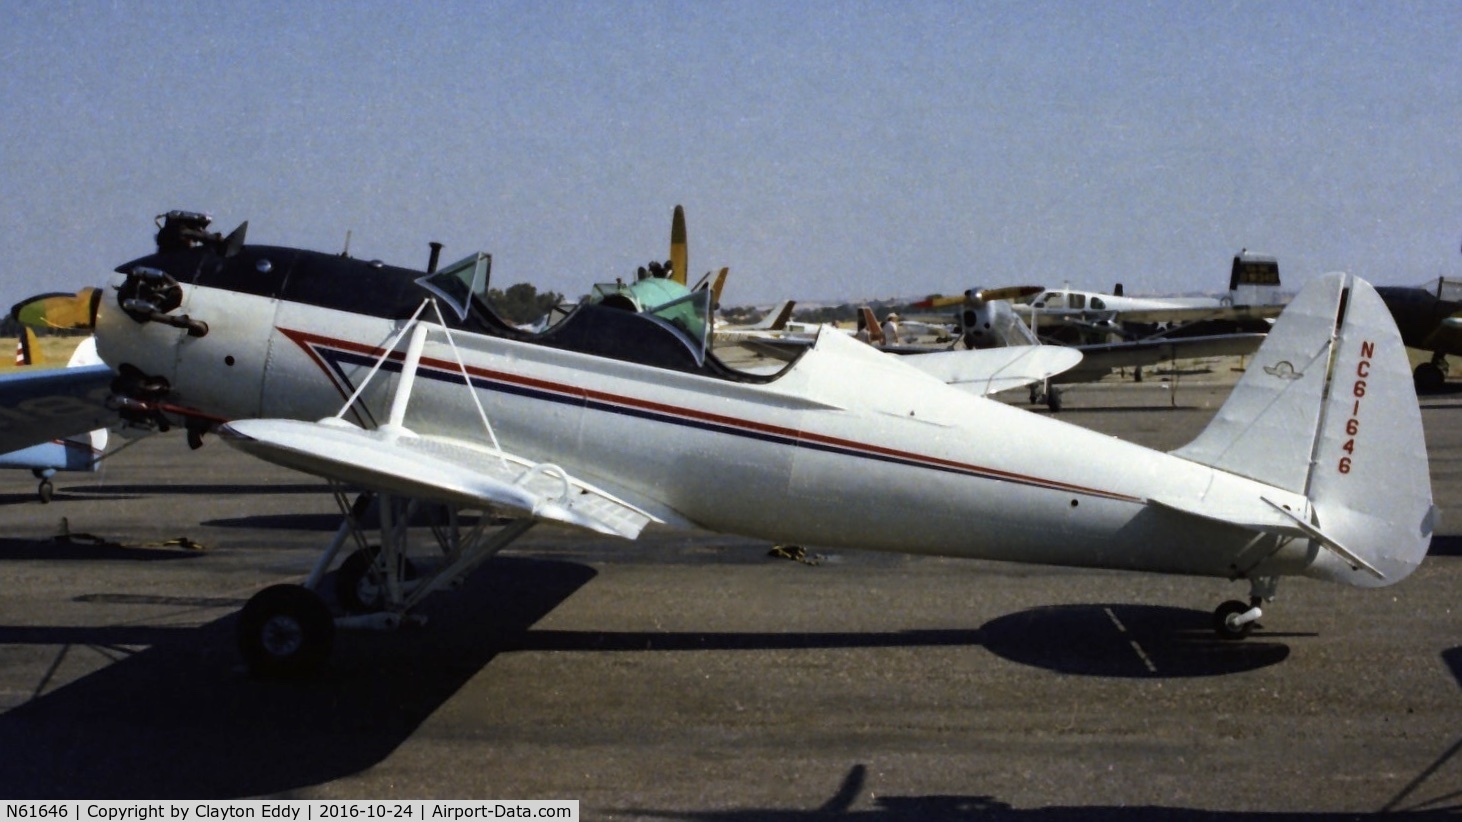 N61646, 1941 Ryan Aeronautical ST3KR C/N 1612, N61646 at a California airport.